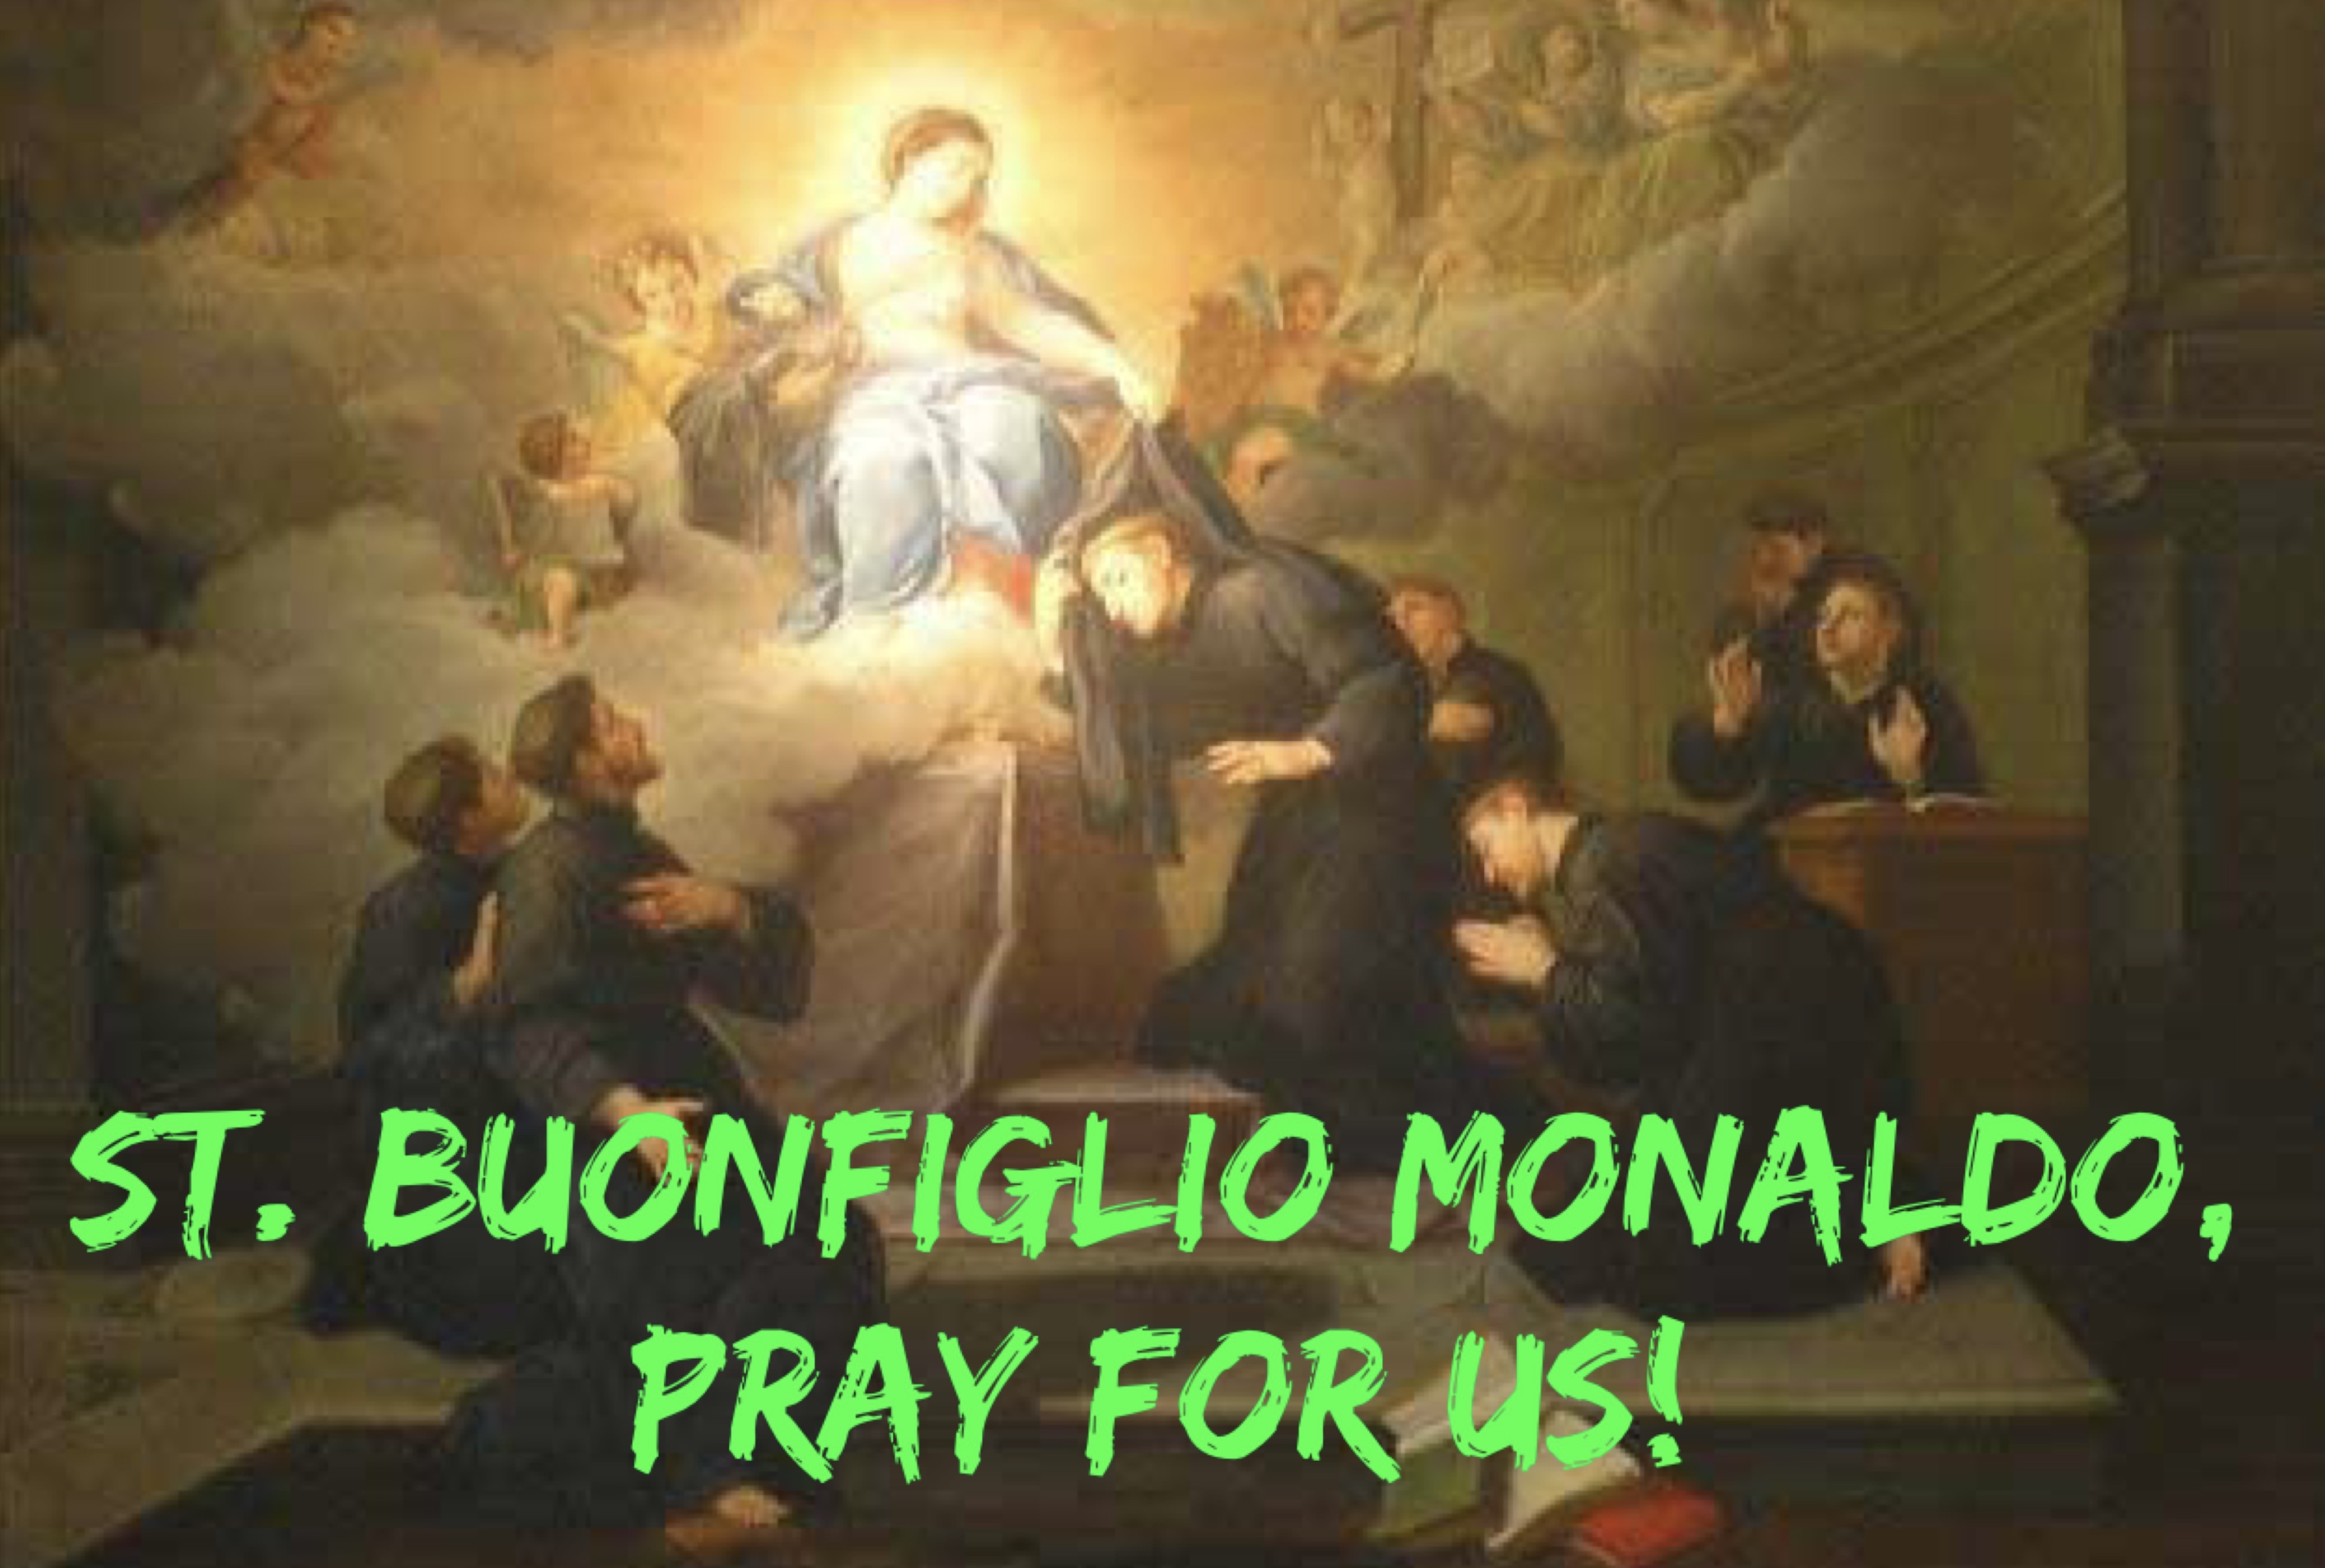 12th February - Saint Buonfiglio Monaldo